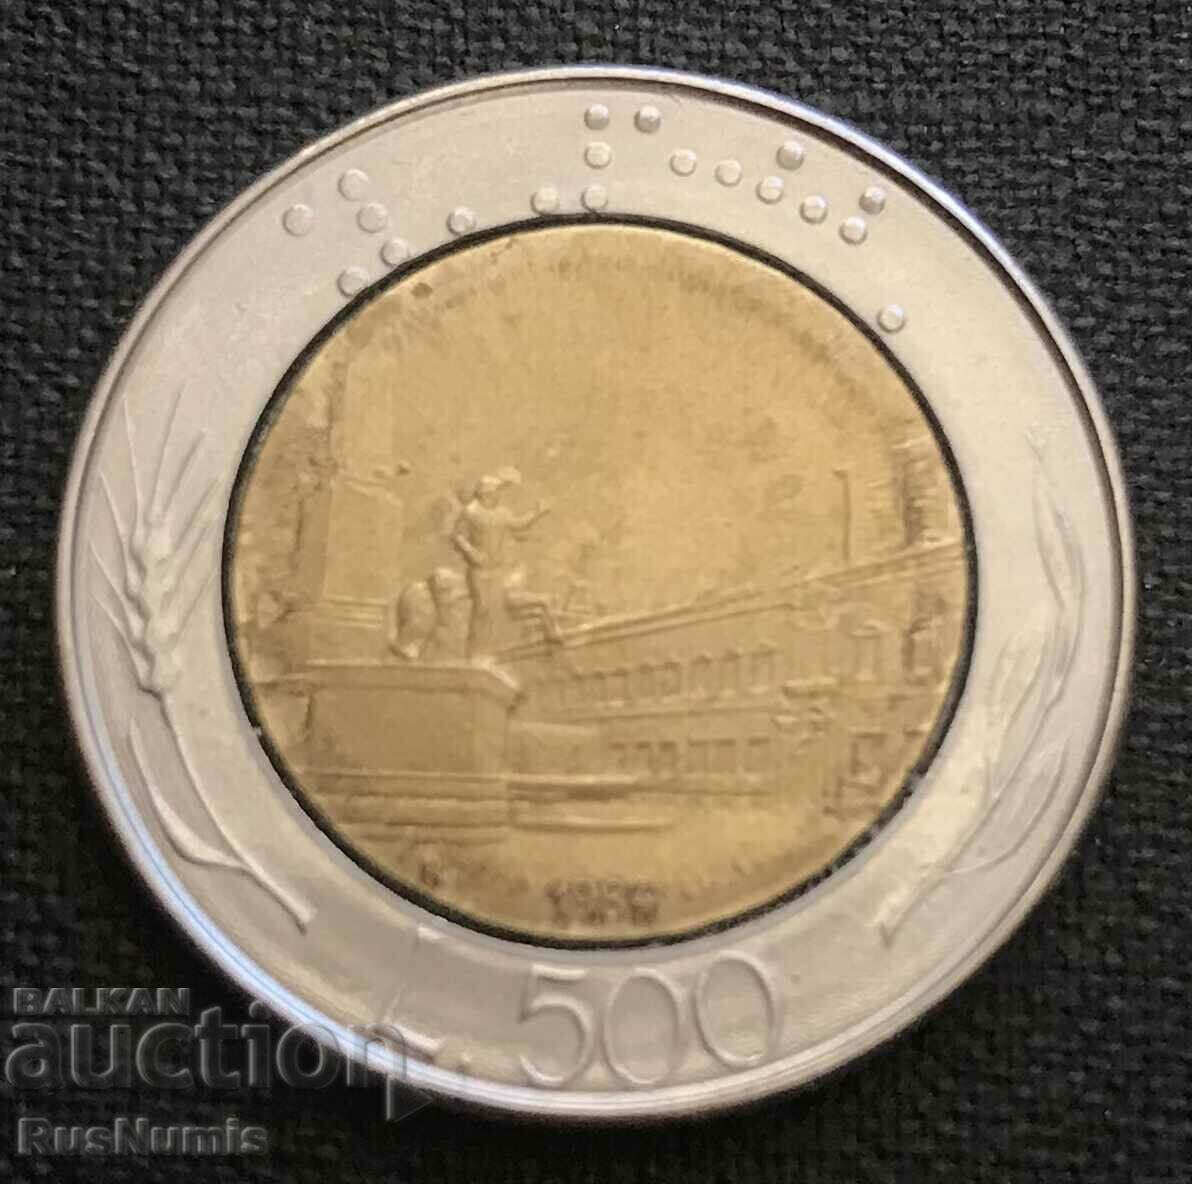 Italy.500 lire 1984.